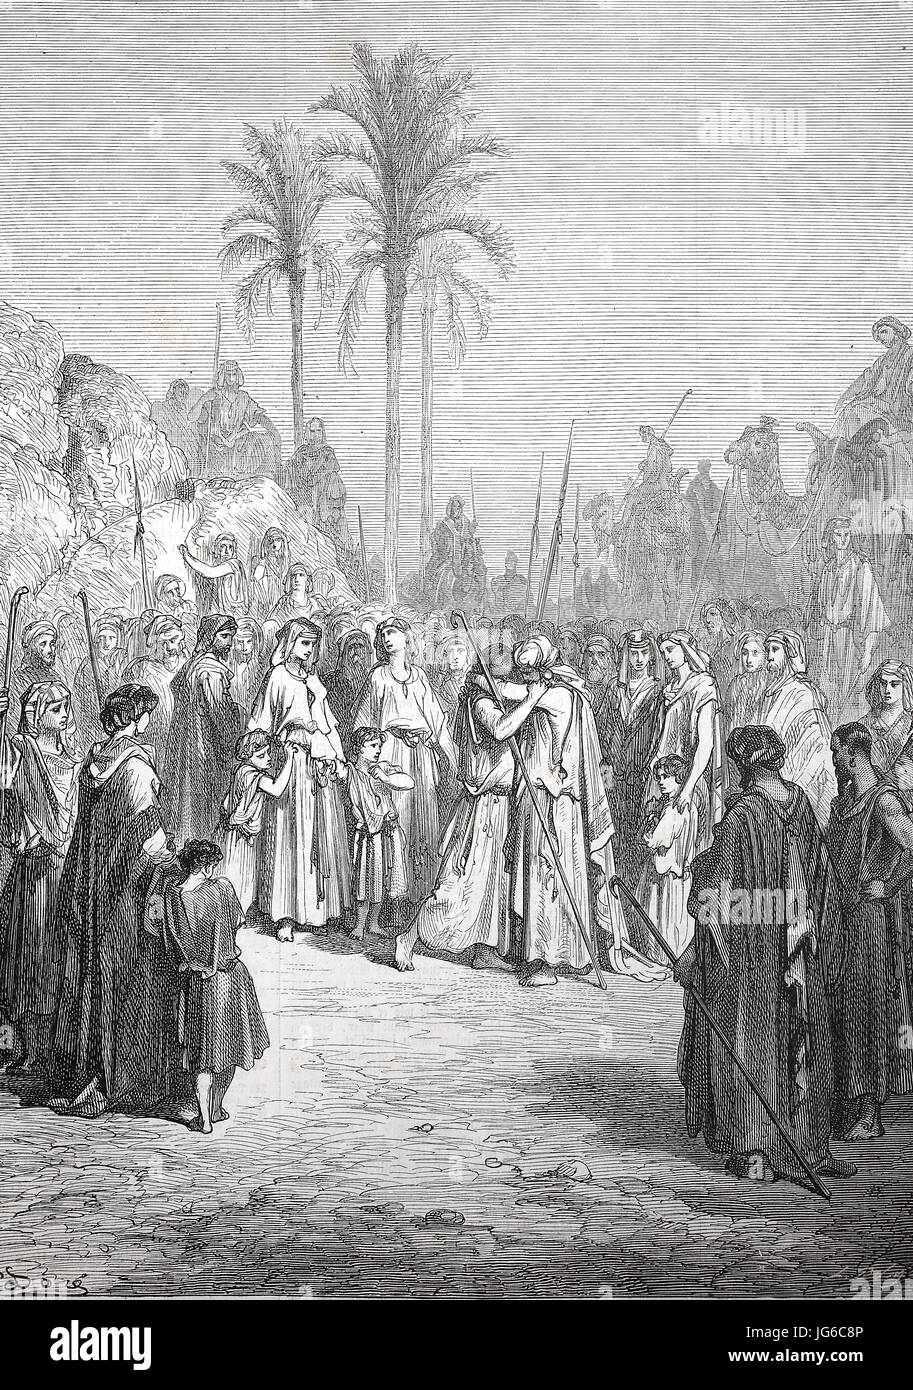 Amélioré : numérique, la réconciliation de Jacob et Esaü, scène biblique, Ésaü et Jacob concilier, illustration du 19ème siècle Banque D'Images